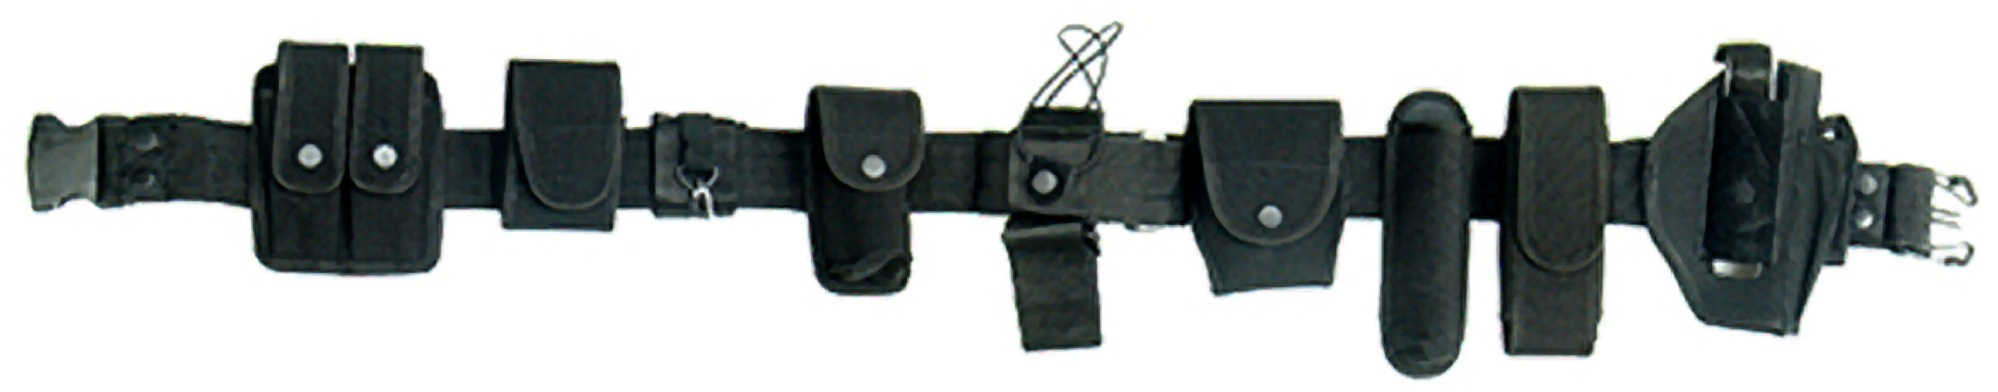 Leapers, Inc. UTG Crime-Buster Belt, Black Md: Pvc-B998B